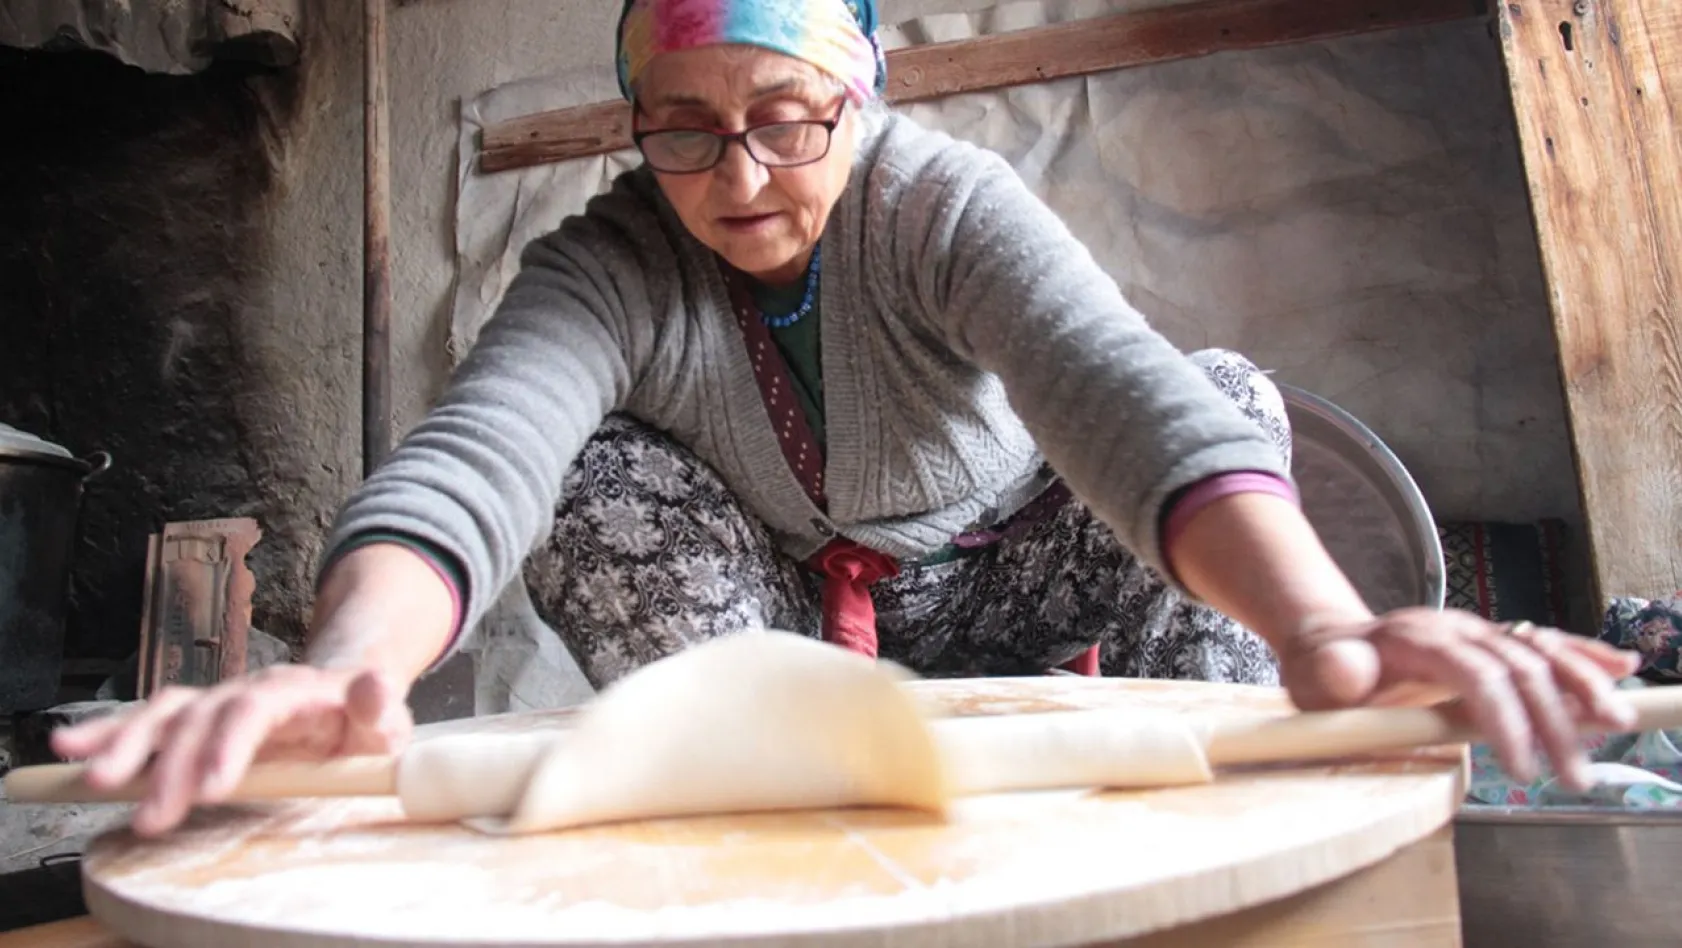 Kemahlı kadınların tandırda kışlık ekmek mesaisi